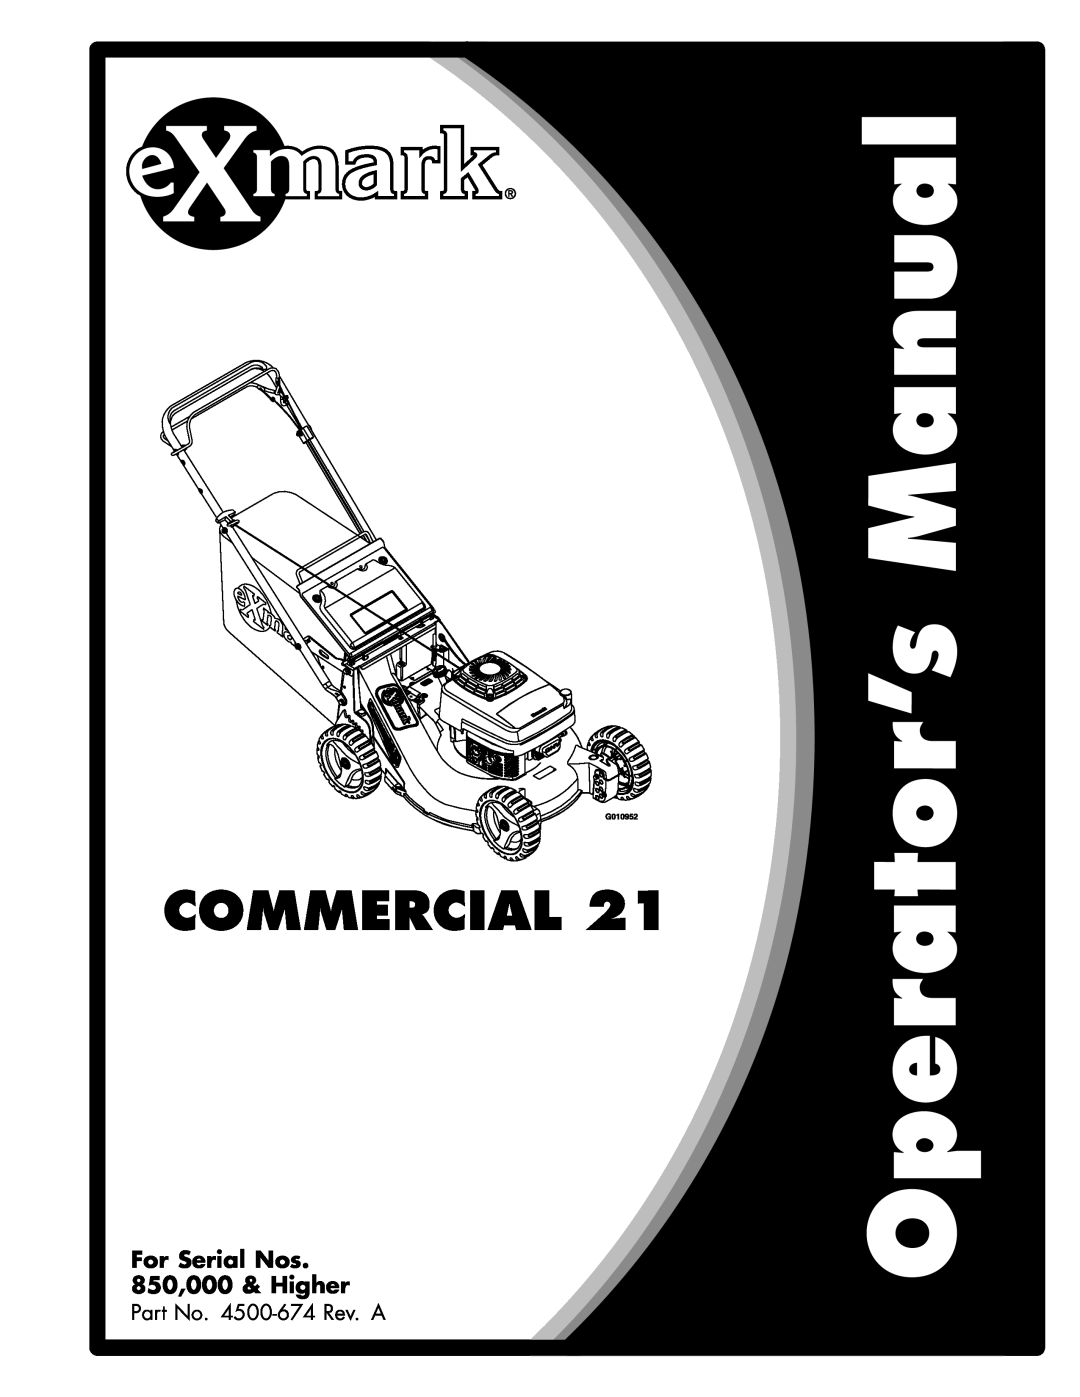 Exmark manual Navigator, For Serial Nos 850,000 & Higher, Part No. 4500-628Rev. B 